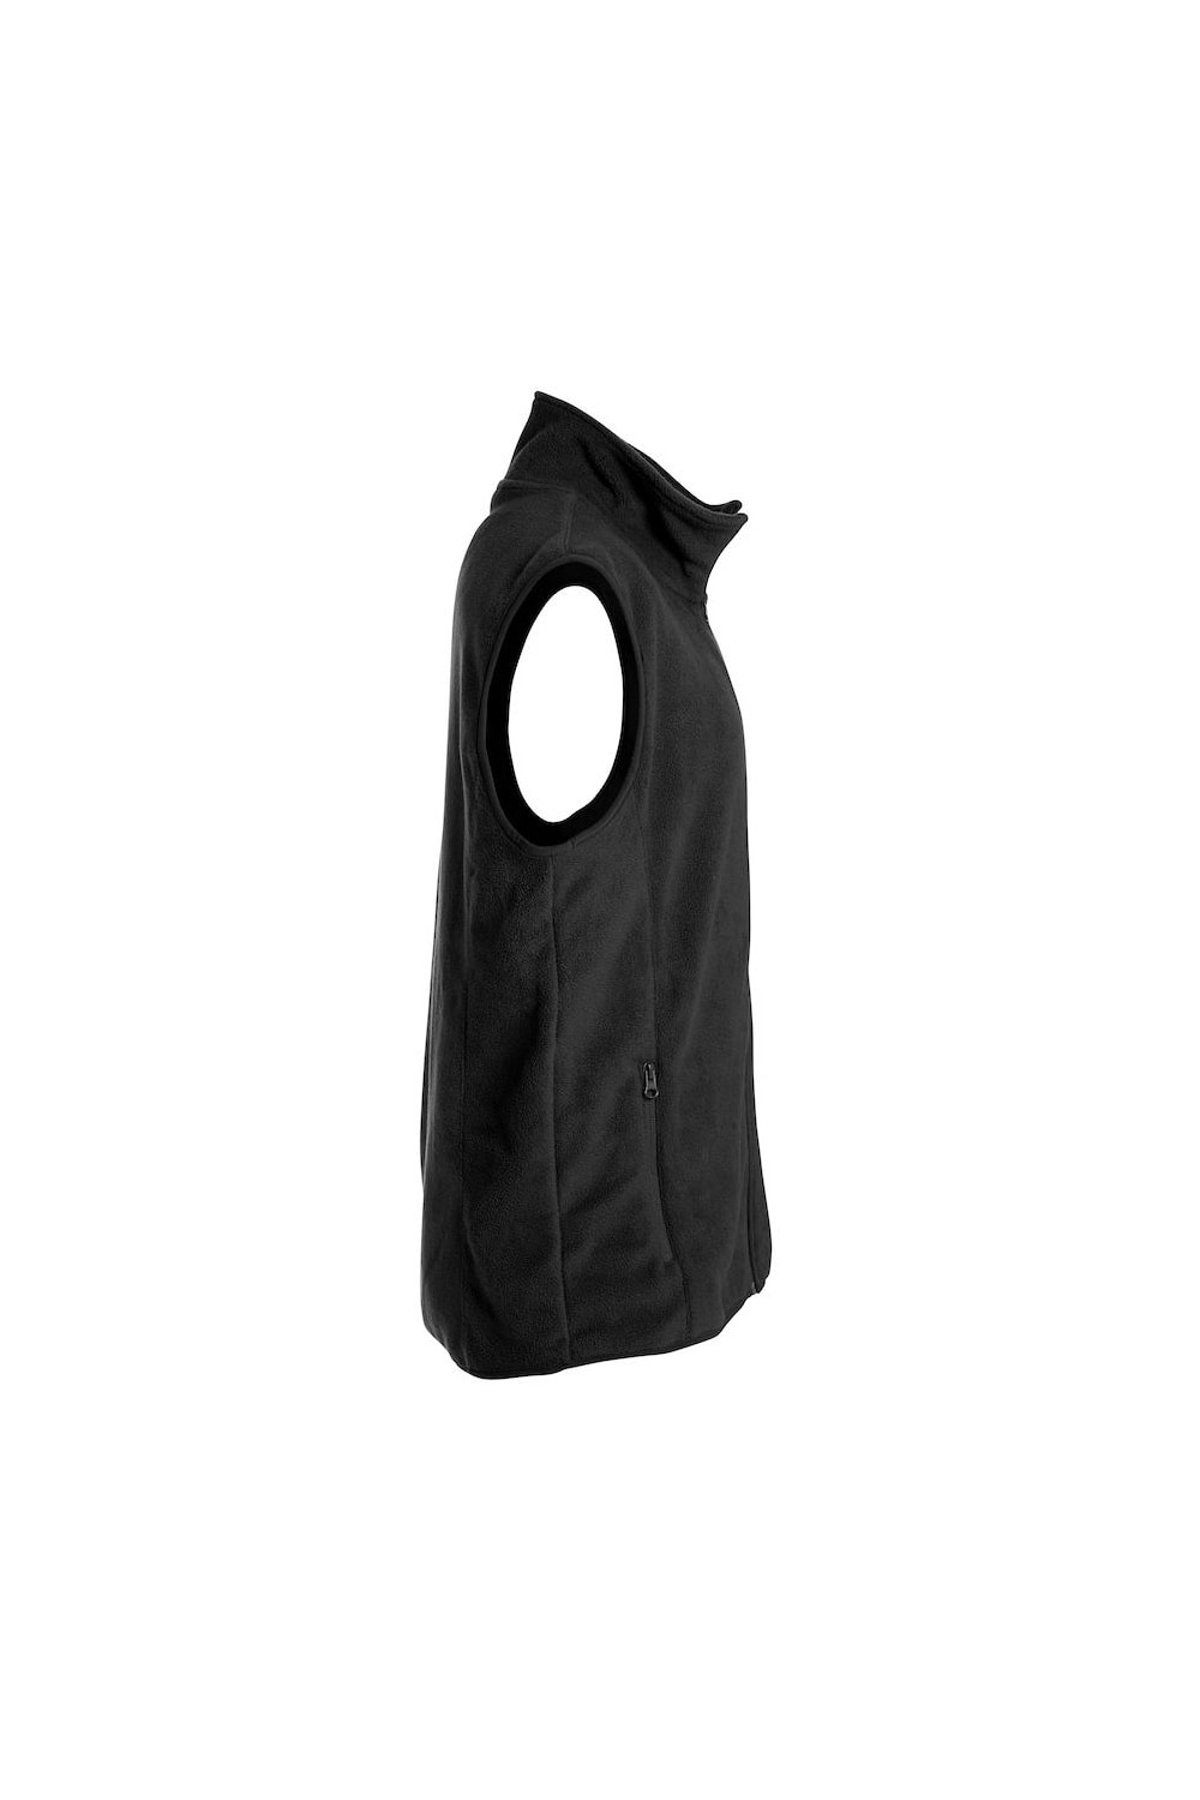 Fordeling Vægt Forbigående Clique Black Unisex Adult Basic Polar Fleece Tank Top (Black) | Verishop